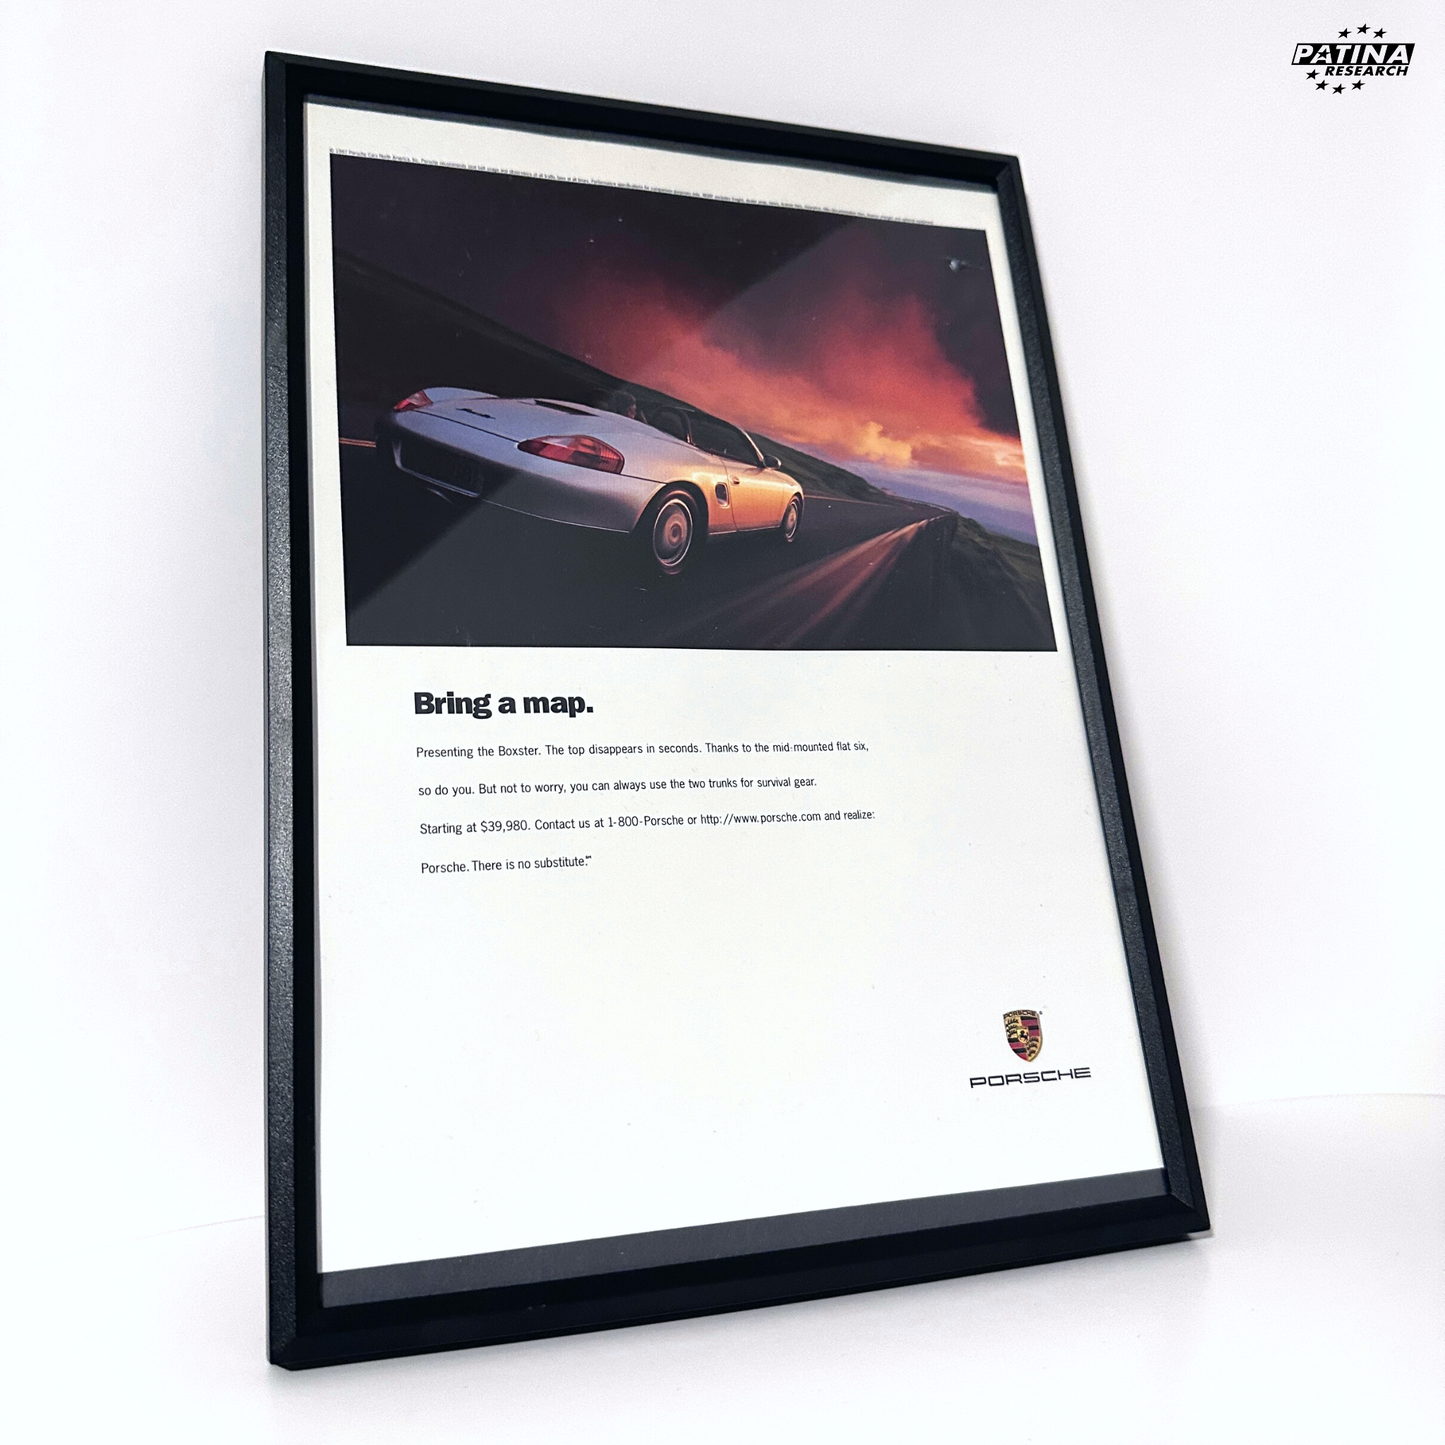 Porsche bring a map Boxter framed ad